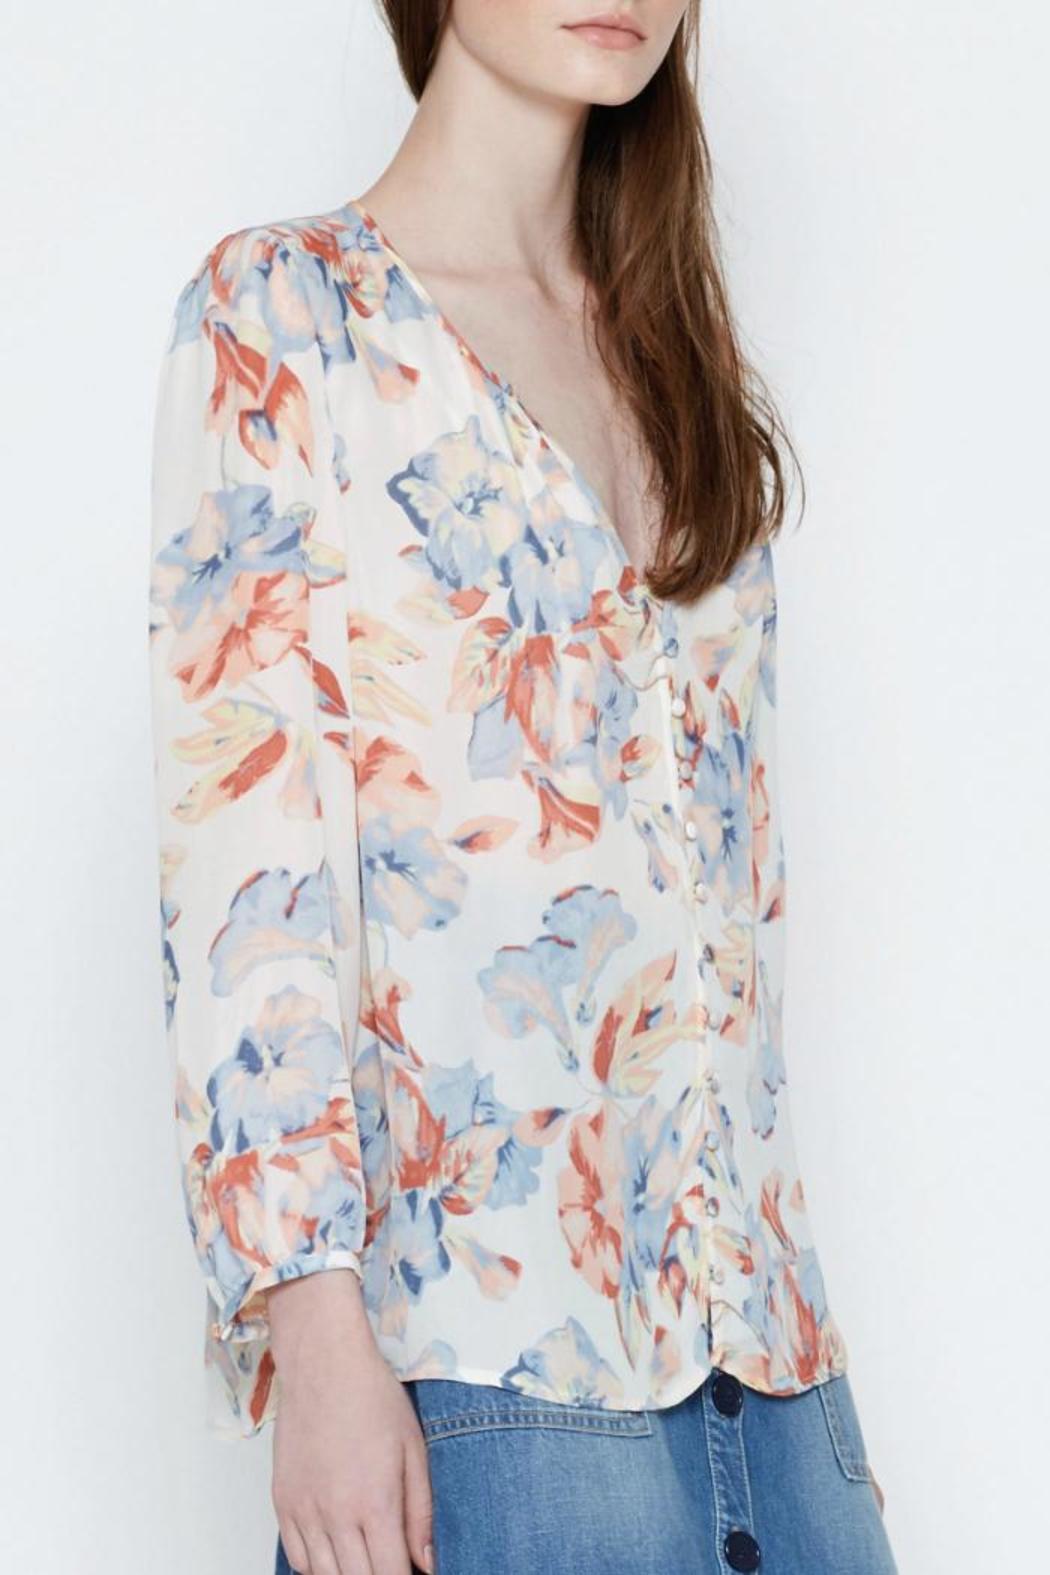 Romantic Floral Silk Top - Size L